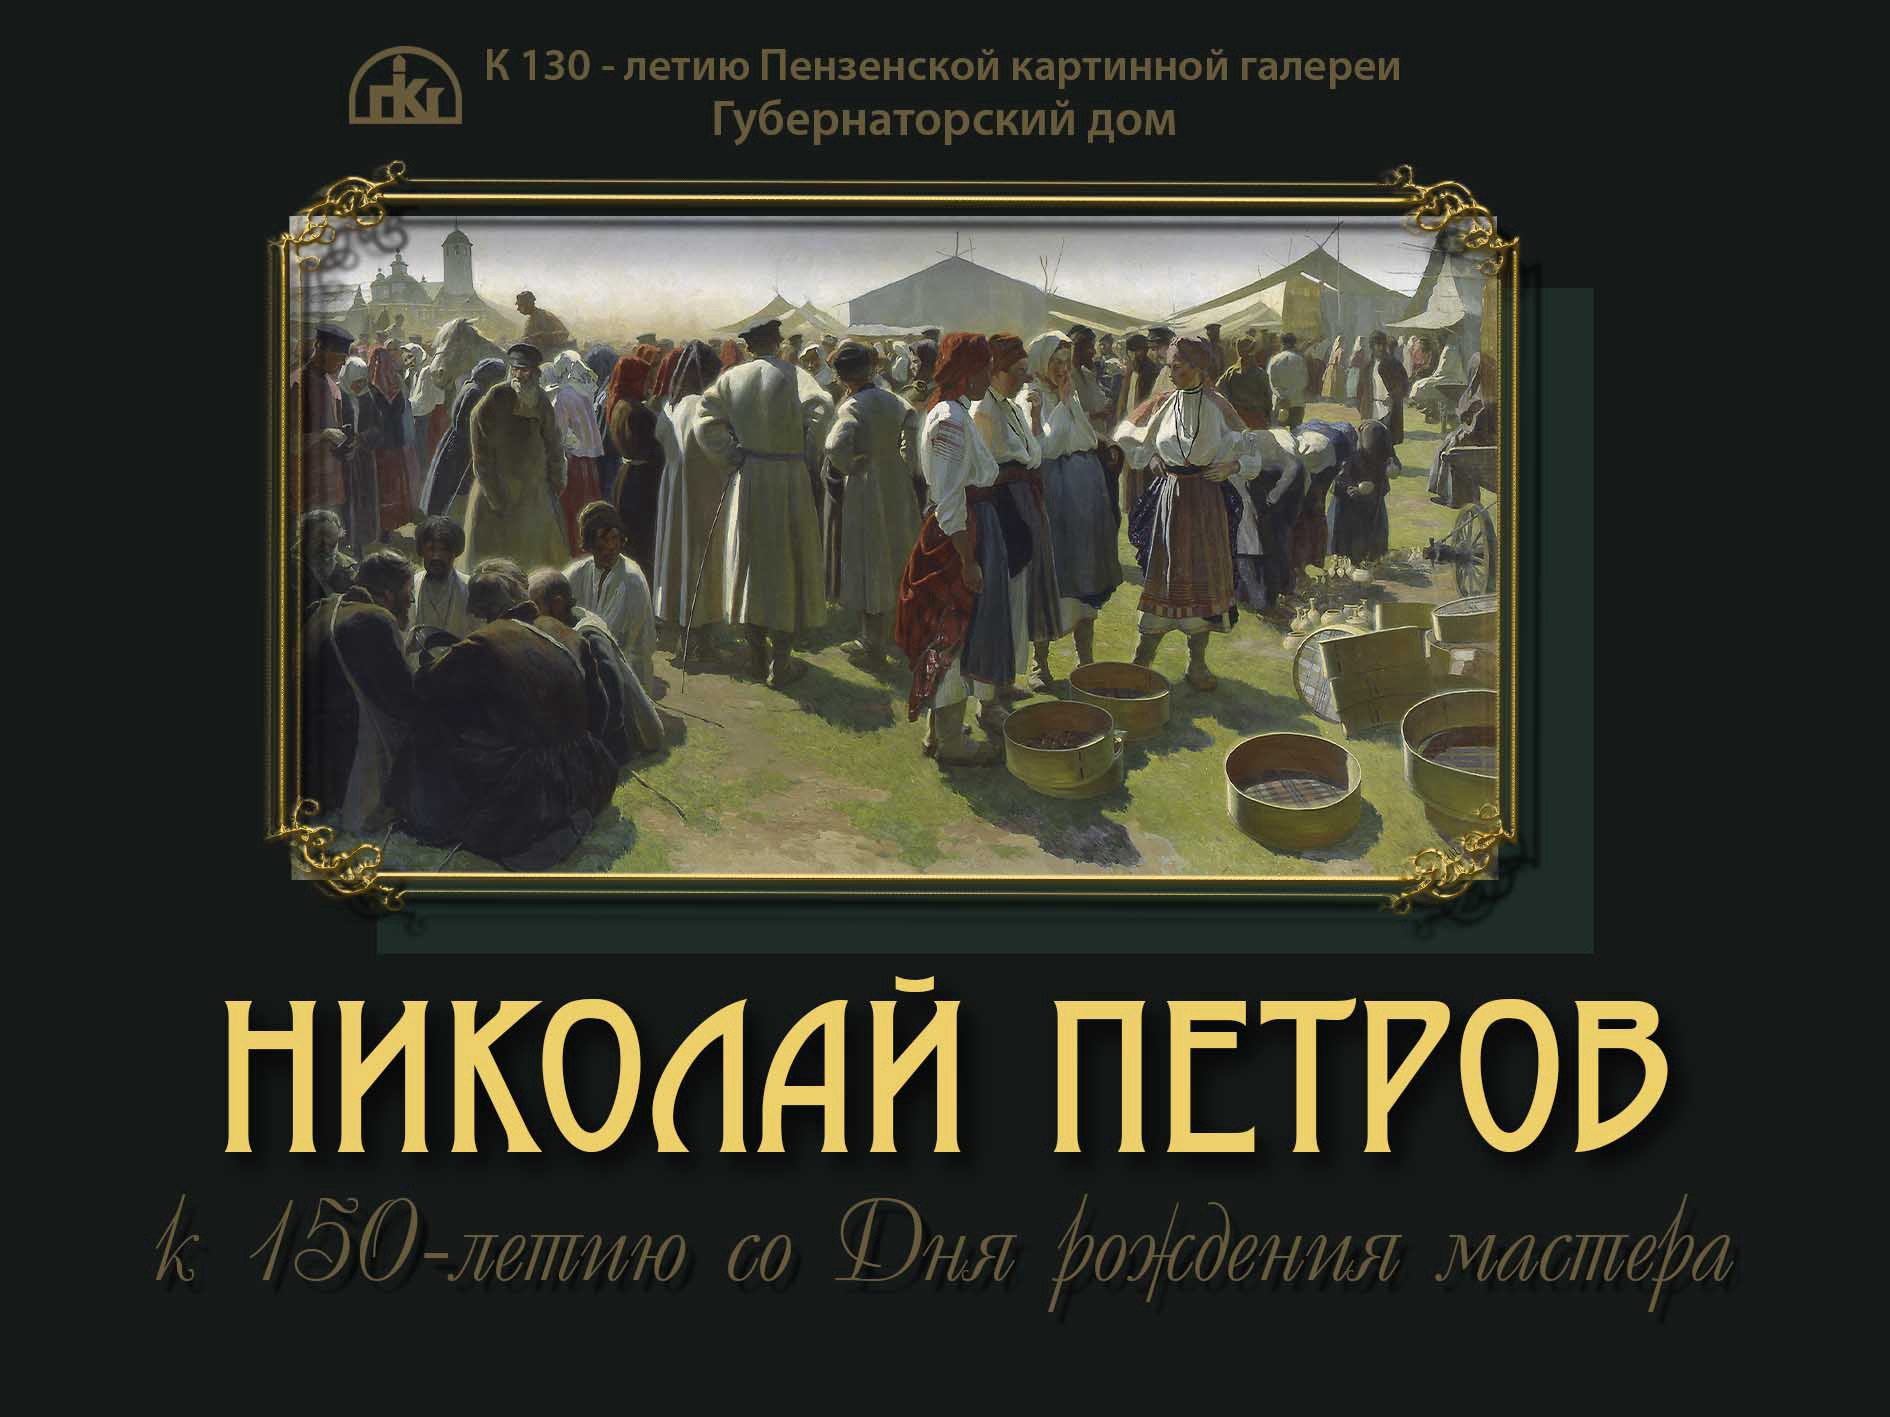 Губернаторский дом приглашает на экскурсию по выставке живописца Н.Ф. Петрова